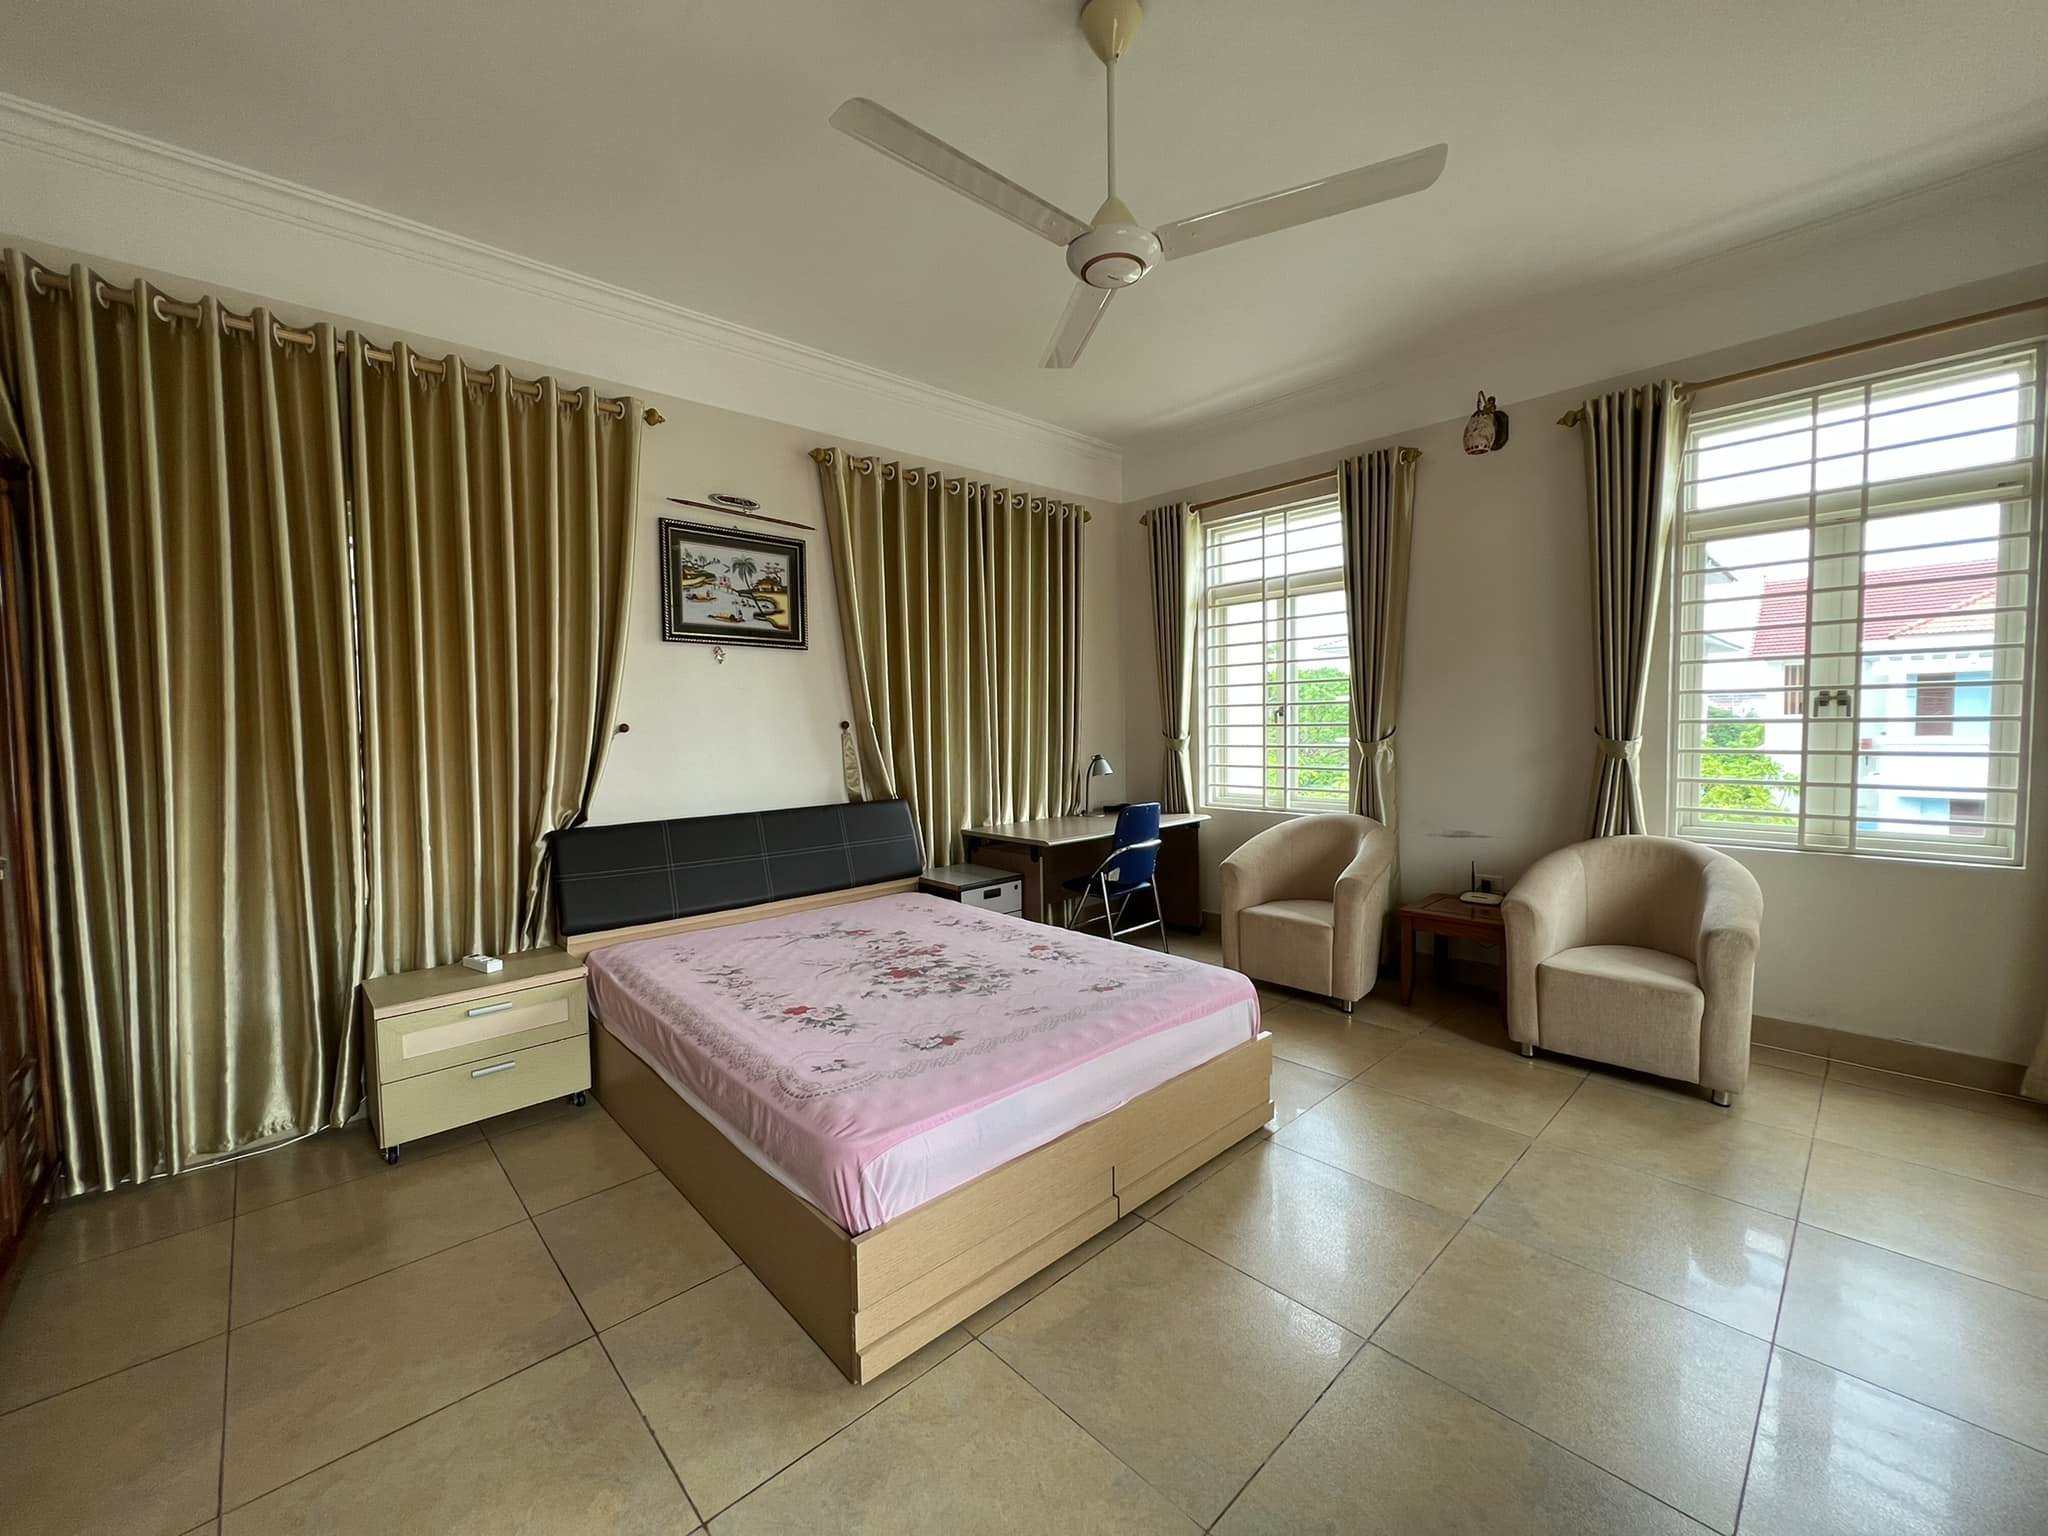 Cho thuê biệt thự Đông Nam Cường, TP HD, 300m2, 4 tầng, 7 phòng ngủ, đầy đủ đồ dùng, VIP 5